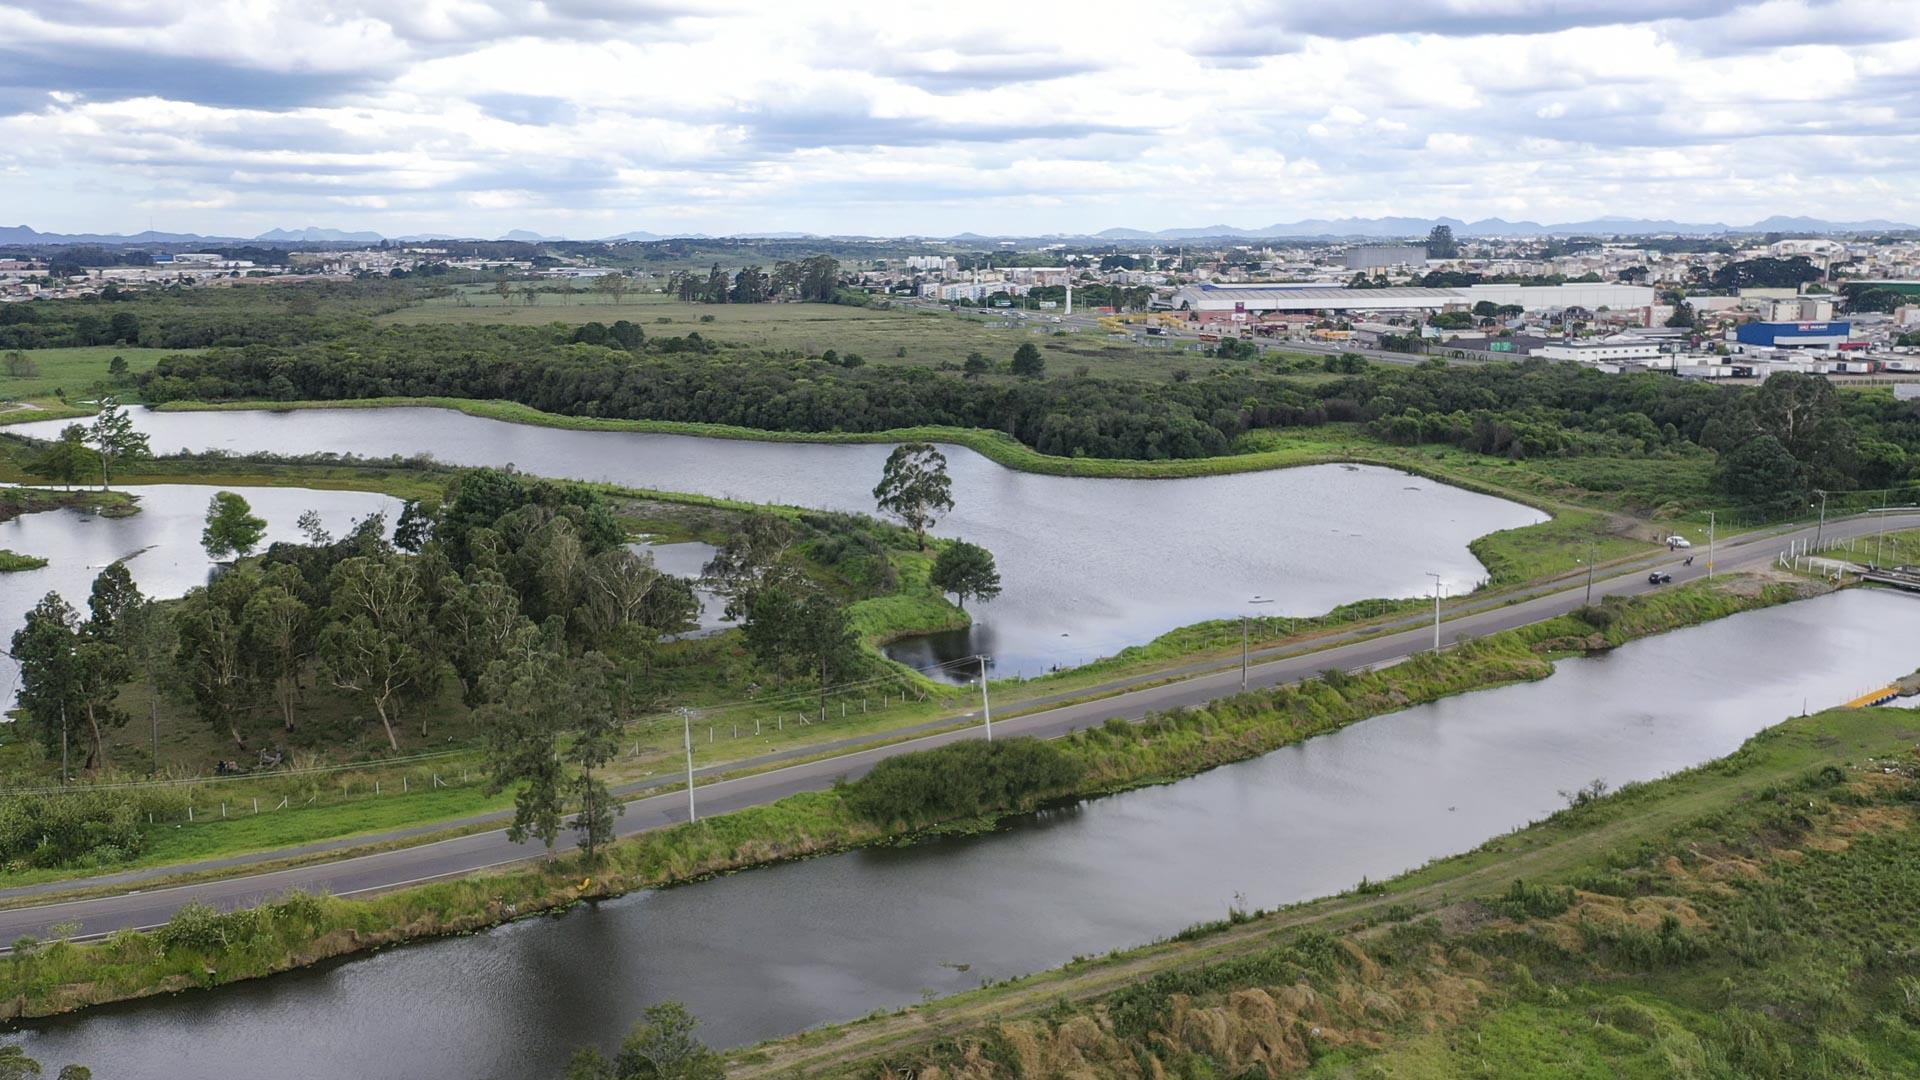  Reserva Hídrica do Futuro vai reservar cerca de 45 bilhões de litros de água em Curitiba